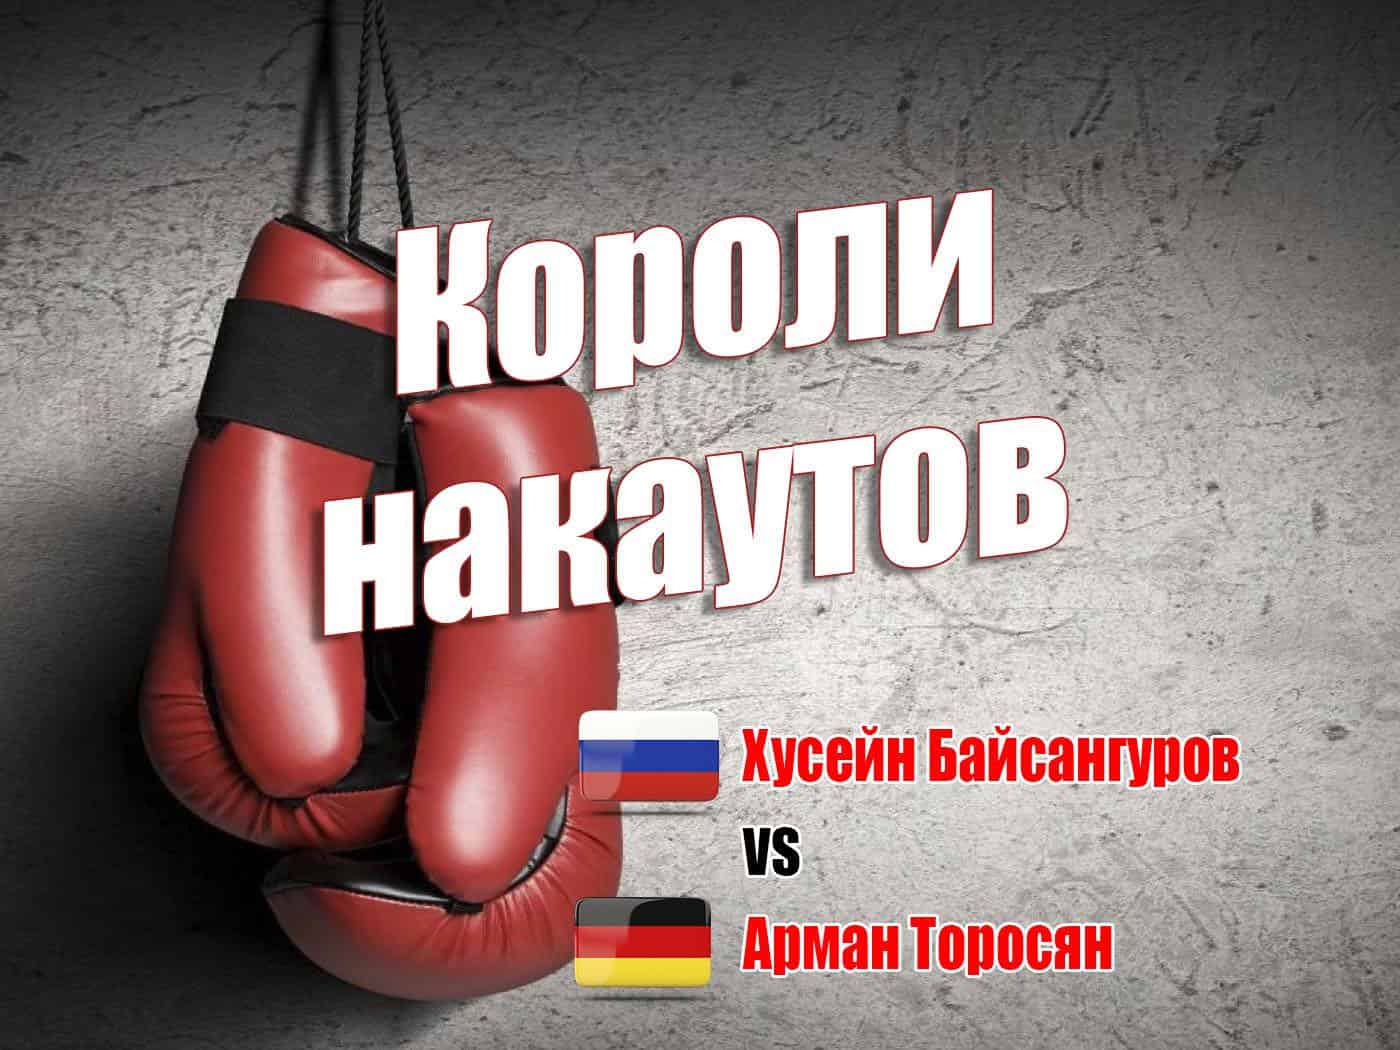 Профессиональный-бокс-Короли-нокаутов-Хусейн-Байсангуров-против-Армана-Торосяна-Трансляция-из-Санкт-Петербурга